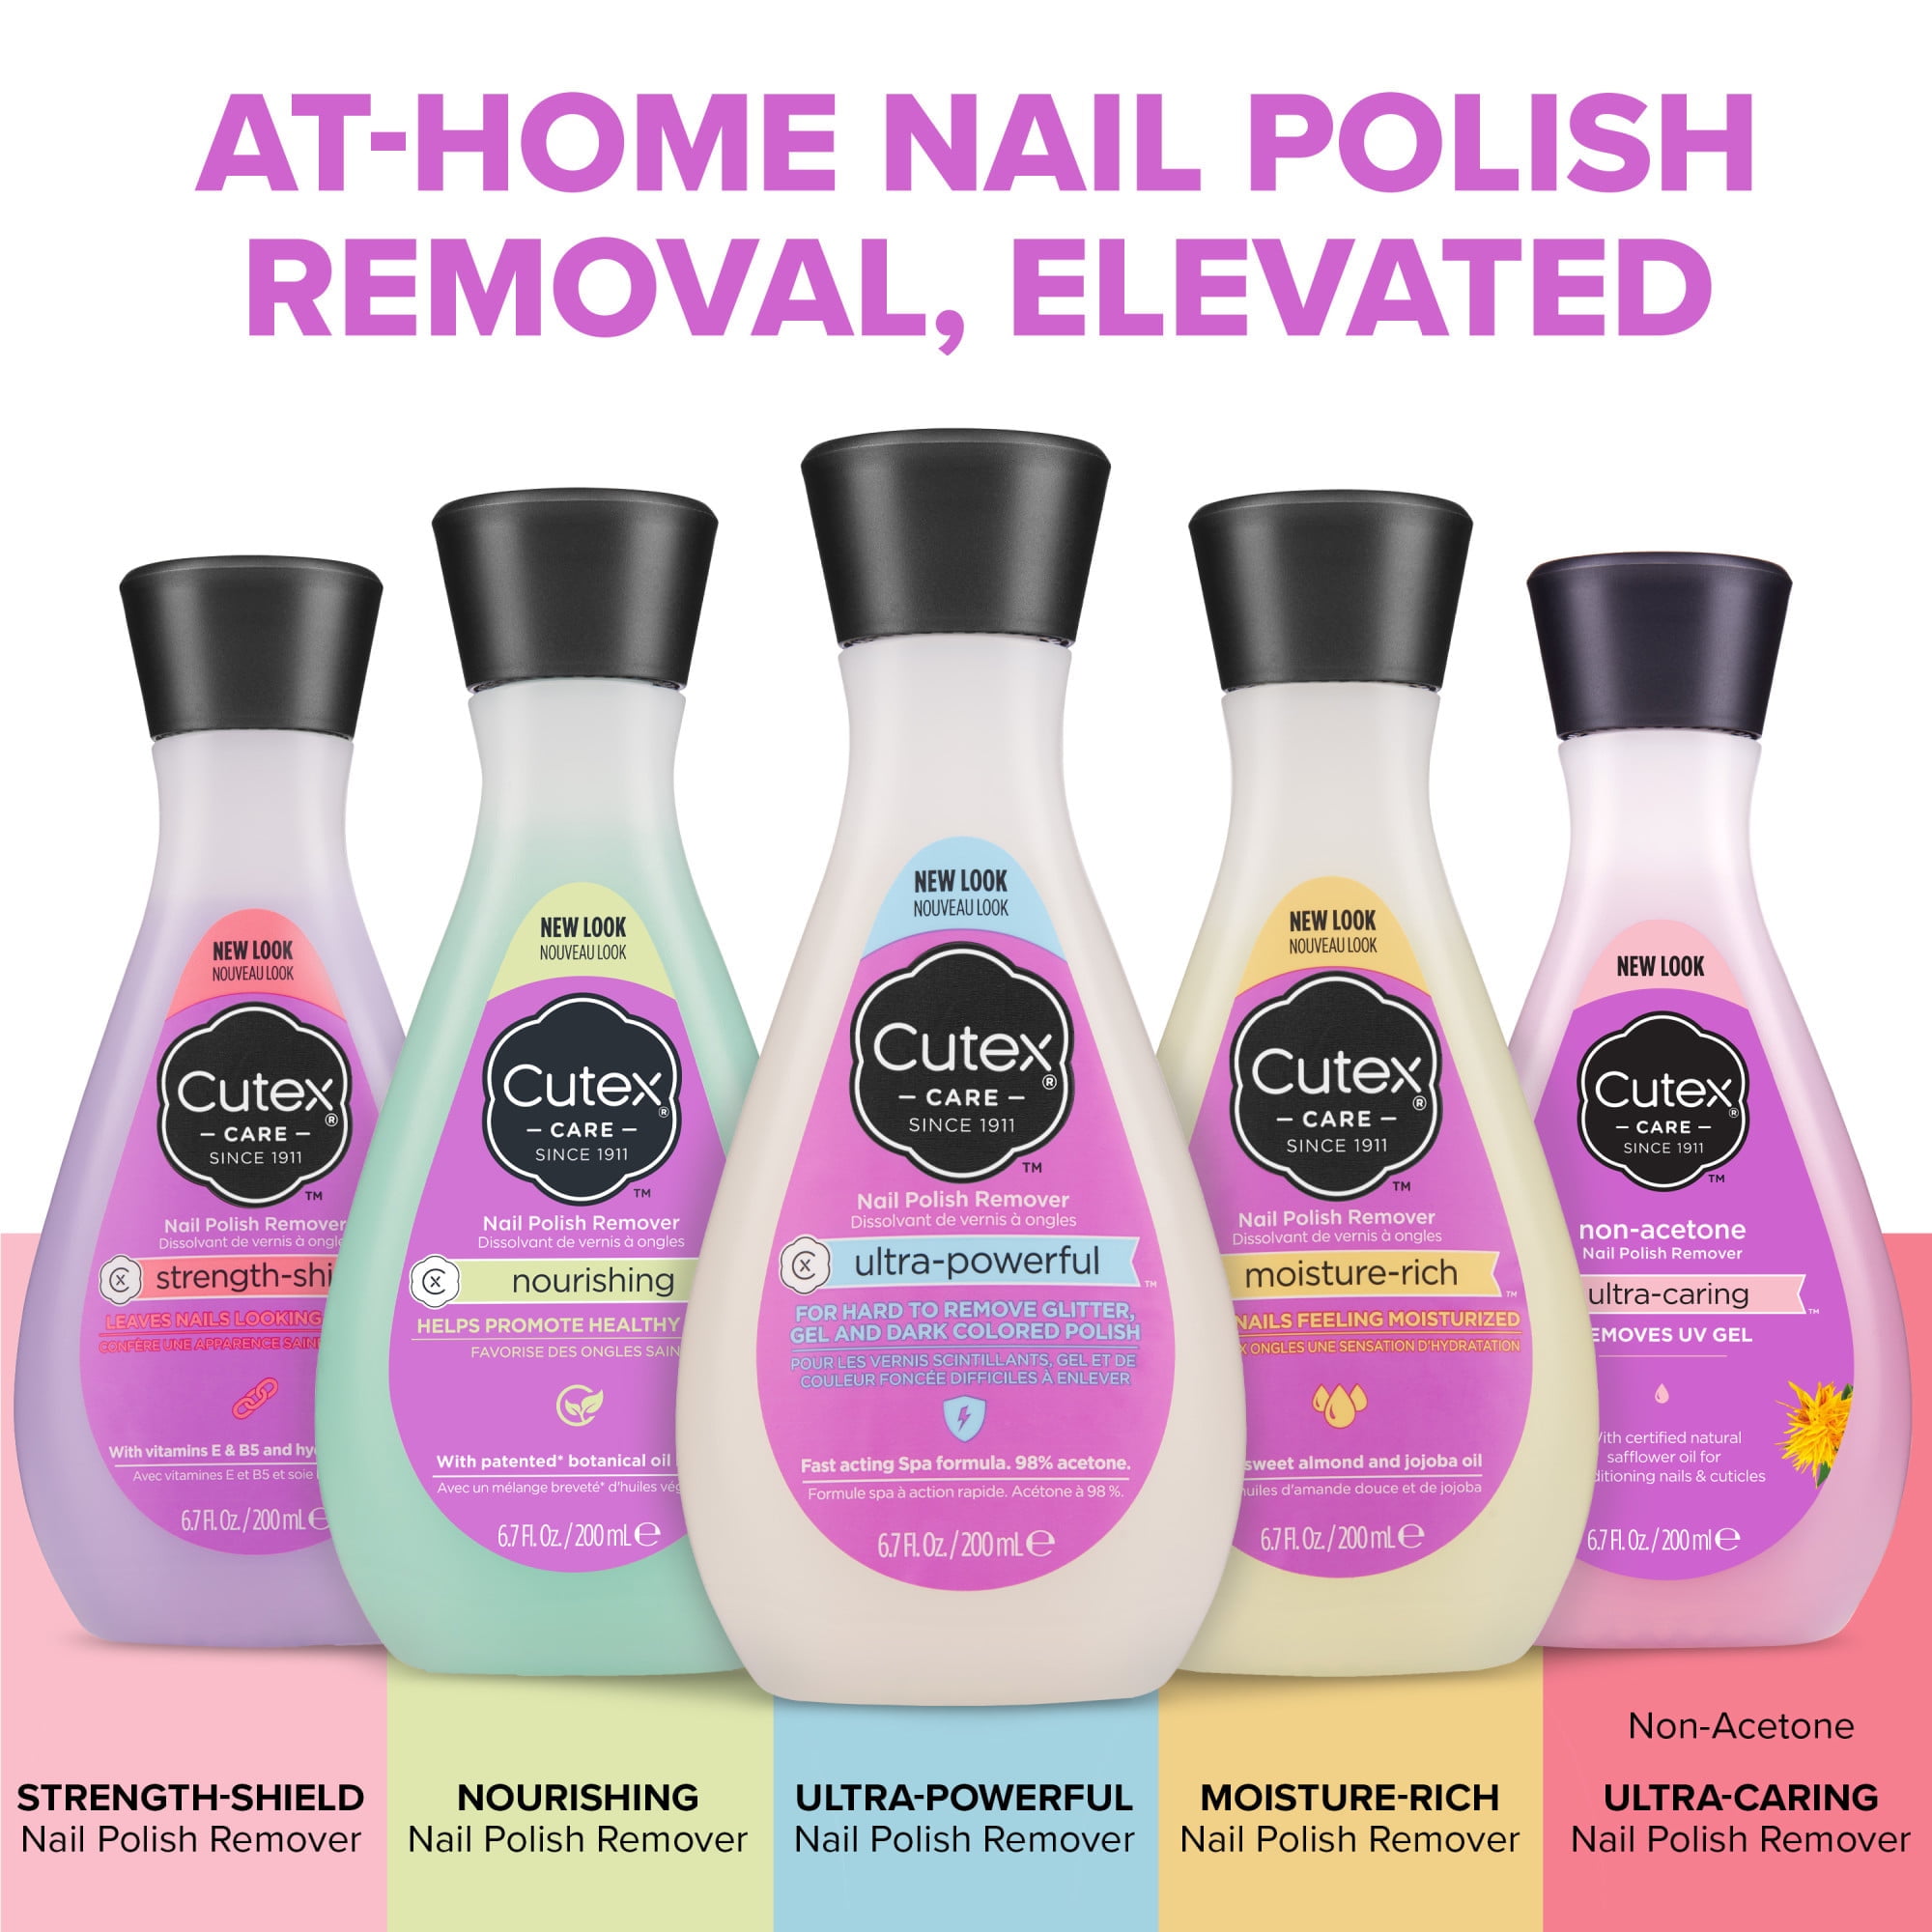 How to make a nail paint remover at home||homemade nail remover||diy nail  polish remover|Sajal Malik | Diy nail polish remover, Nail remover, Acrylic  nail shapes